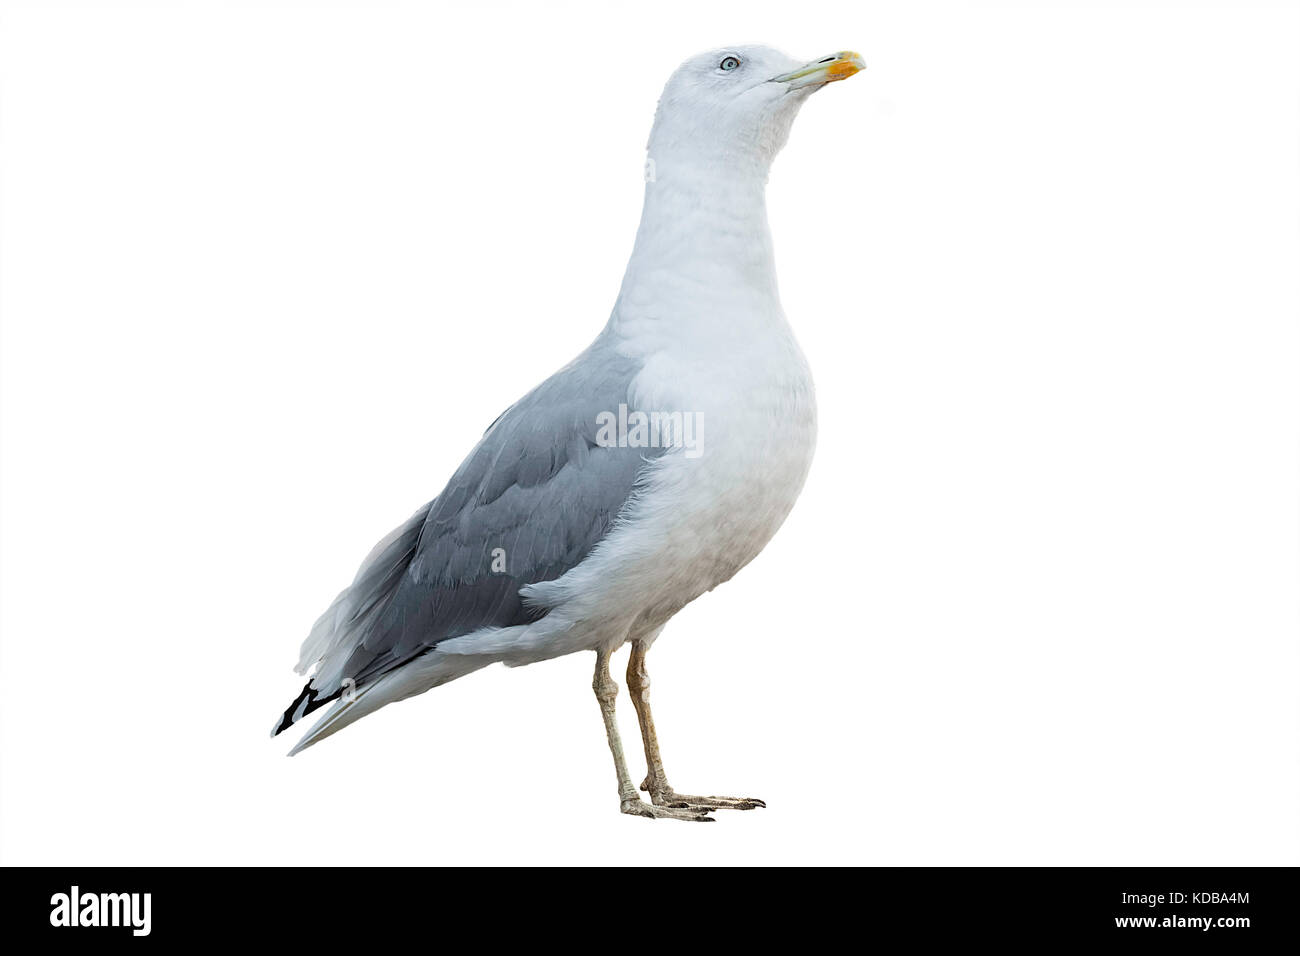 Mouette blanche et grise avec plumage isolé sur fond blanc Banque D'Images